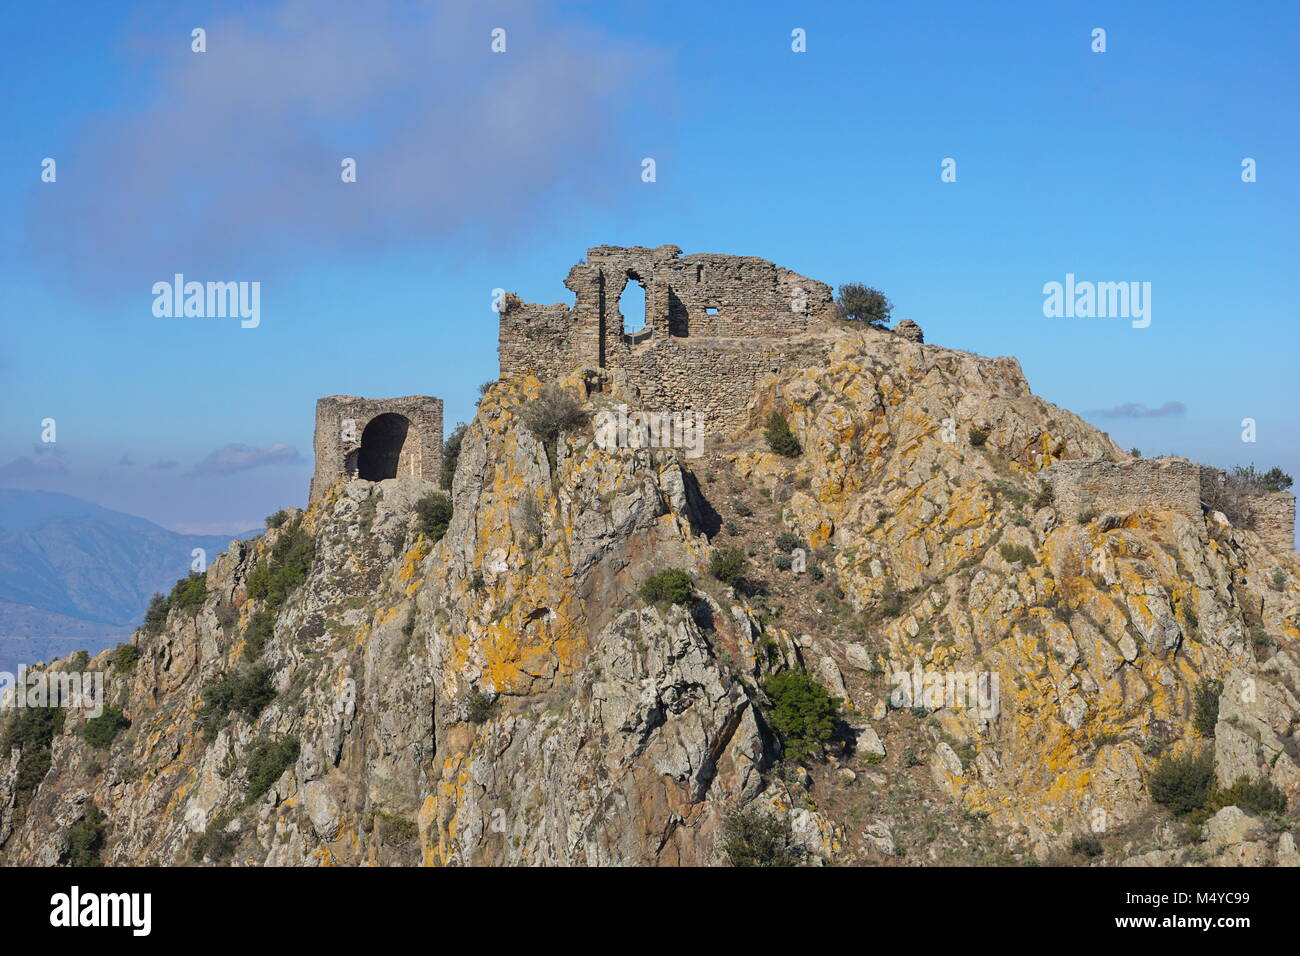 Le rovine del castello de Verdera si trova alla sommità di un ripido sperone roccioso, in Spagna, in Catalogna, Alt Emporda Girona Foto Stock